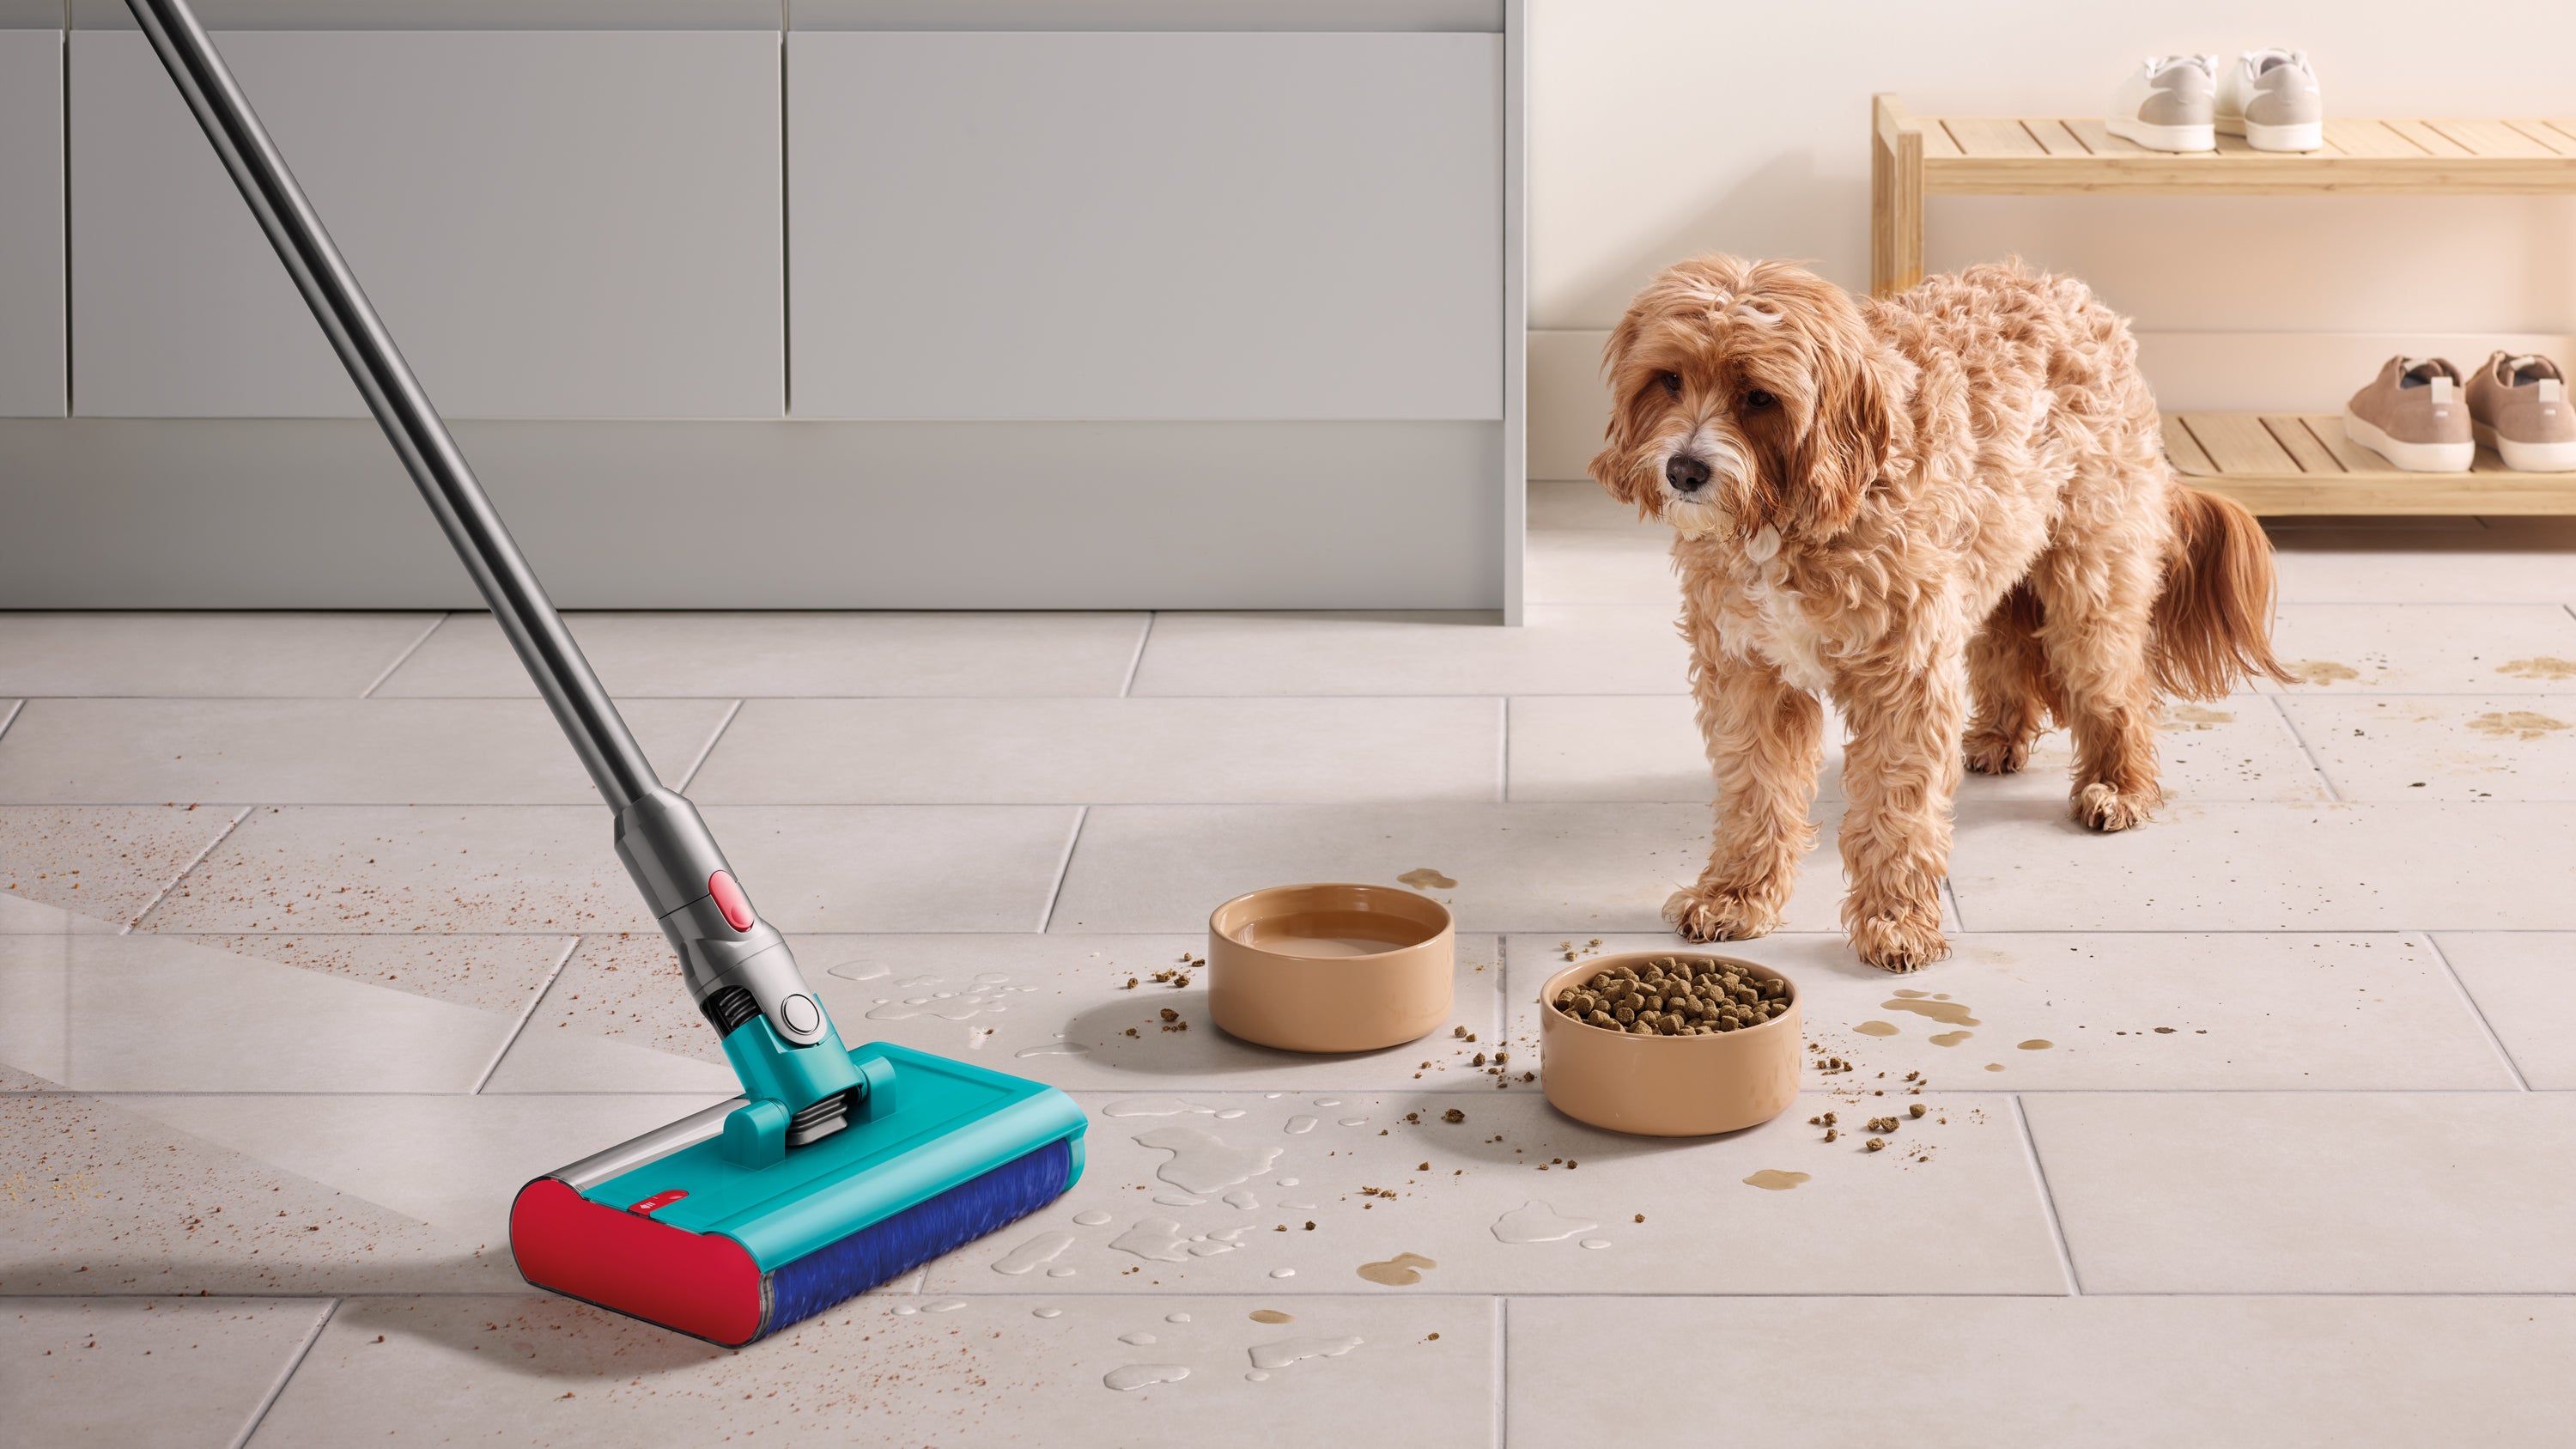 يتم استخدام رأس التنظيف الرطب Dyson Submarine على أرضية من البلاط لتنظيف الطعام المتسرب وبصمات أقدام كلب صغير.